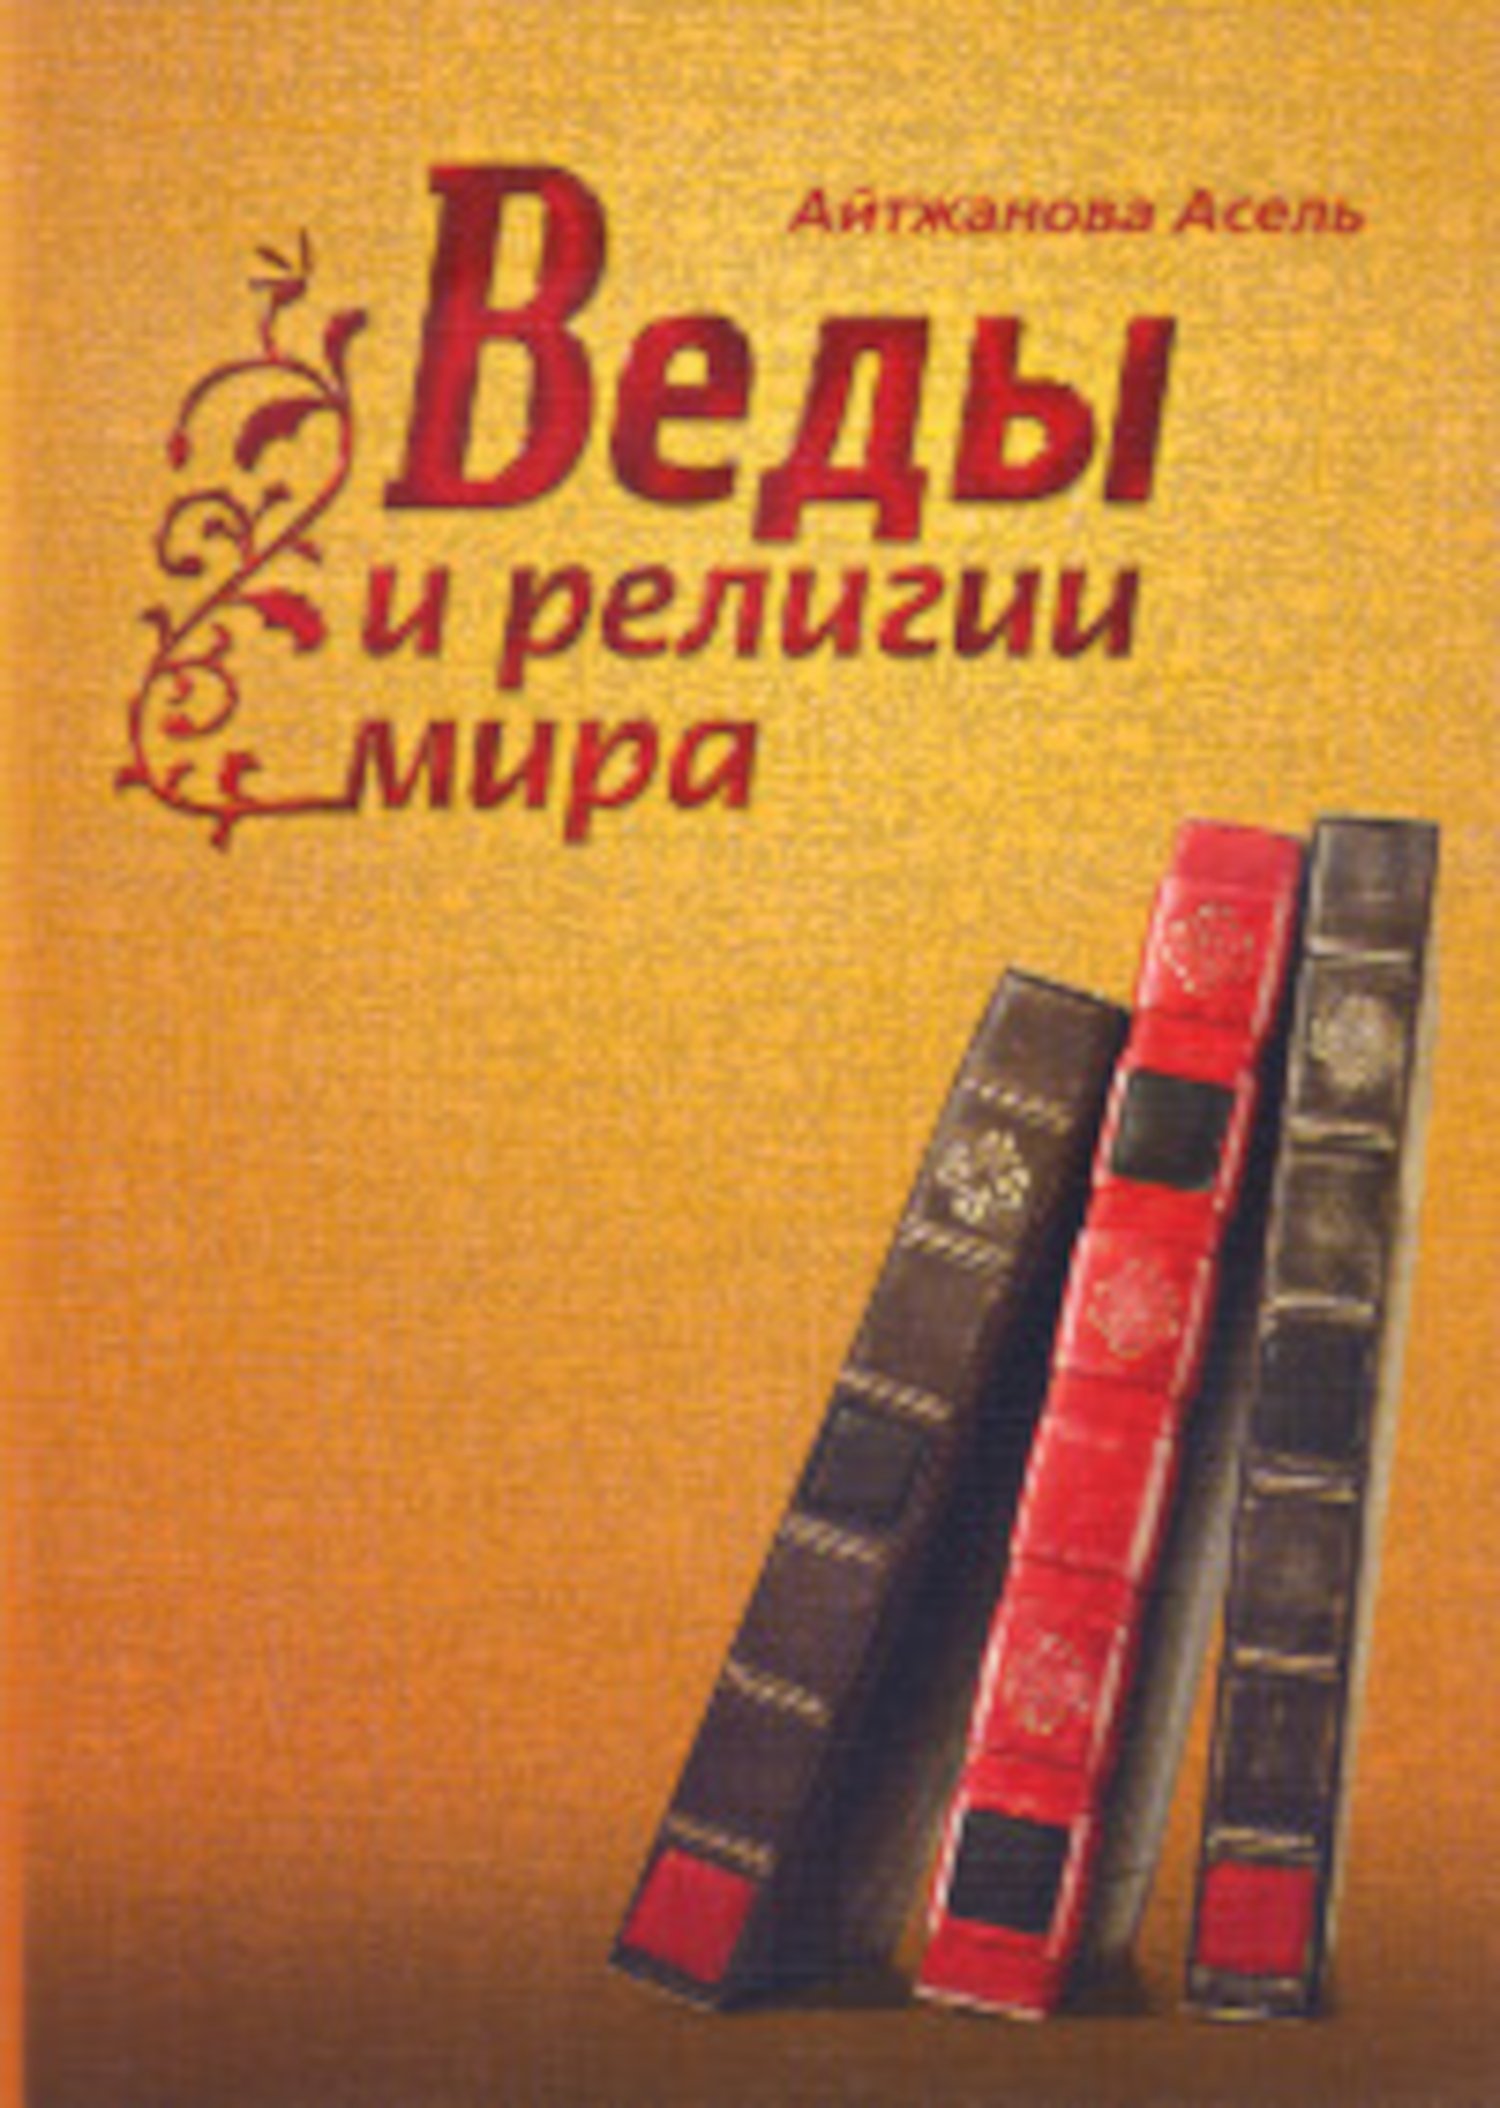 Купить книгу Веды и религии мира Айтжанова А. К. в интернет-магазине Ариаварта